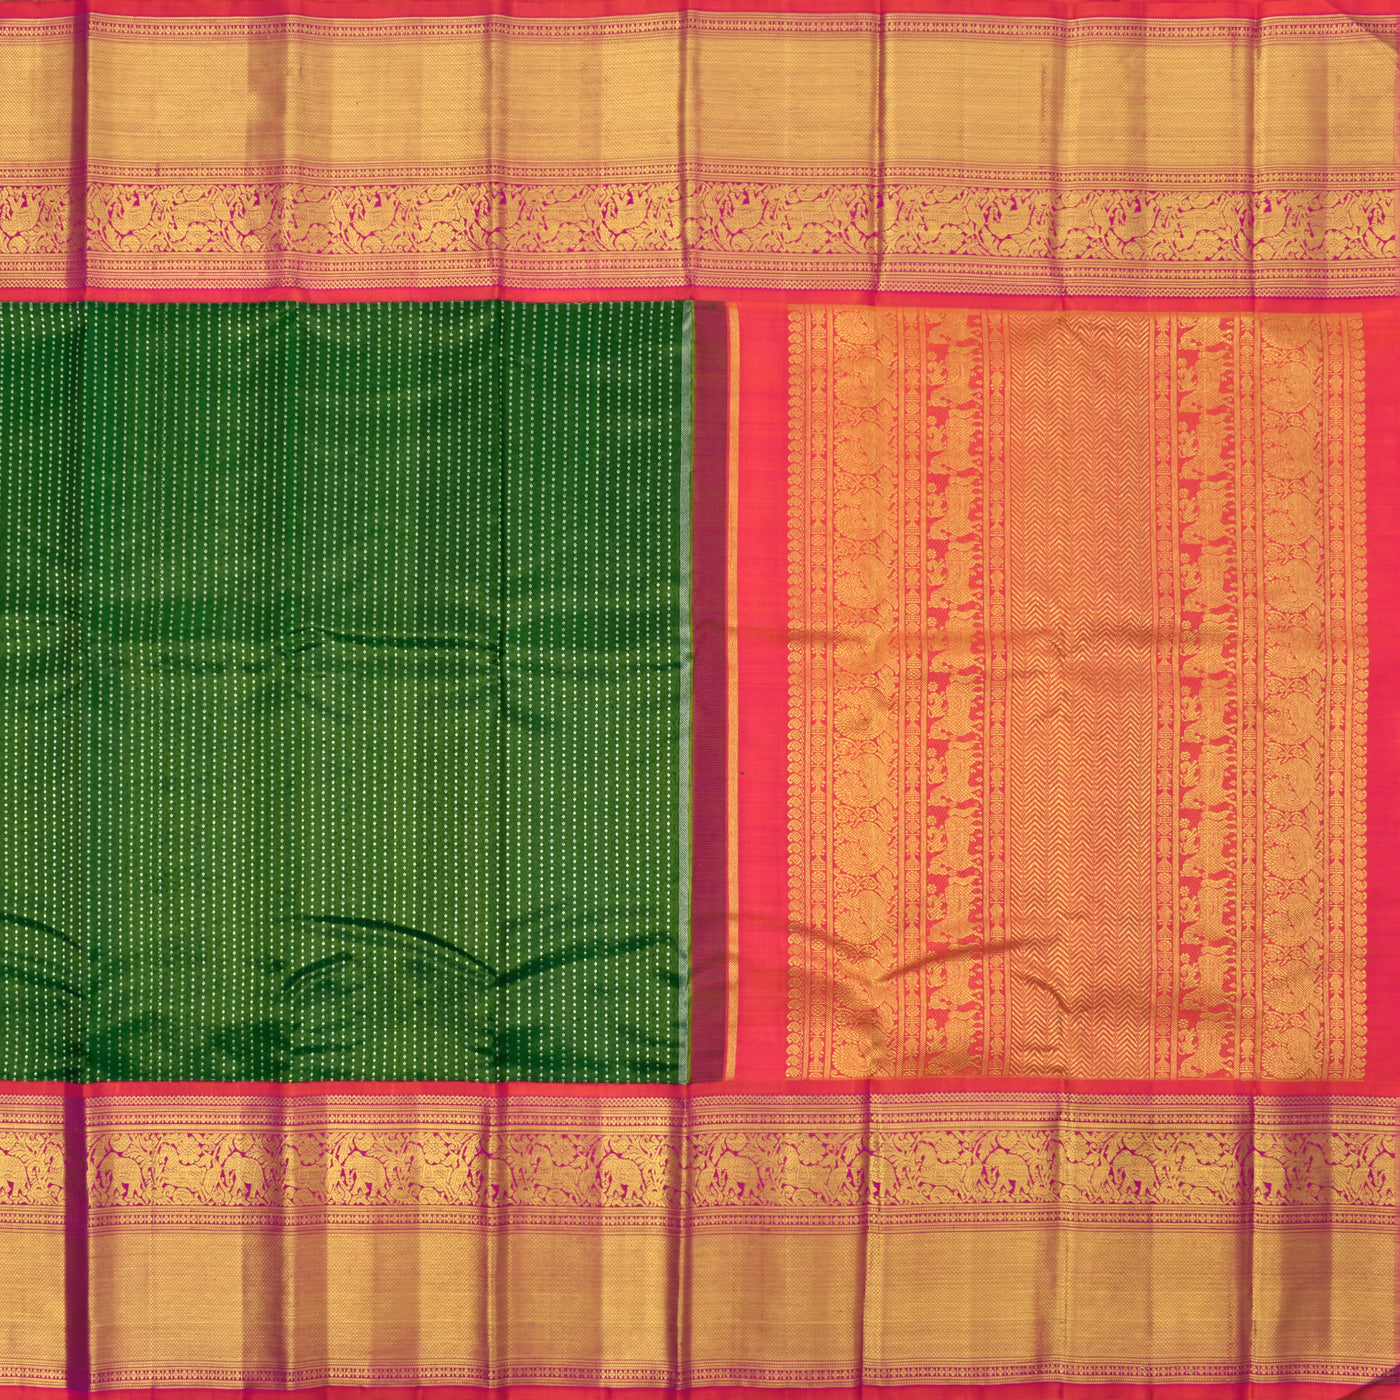 Alli Green Kanchipuram Silk Saree with Kuligai Butta Design